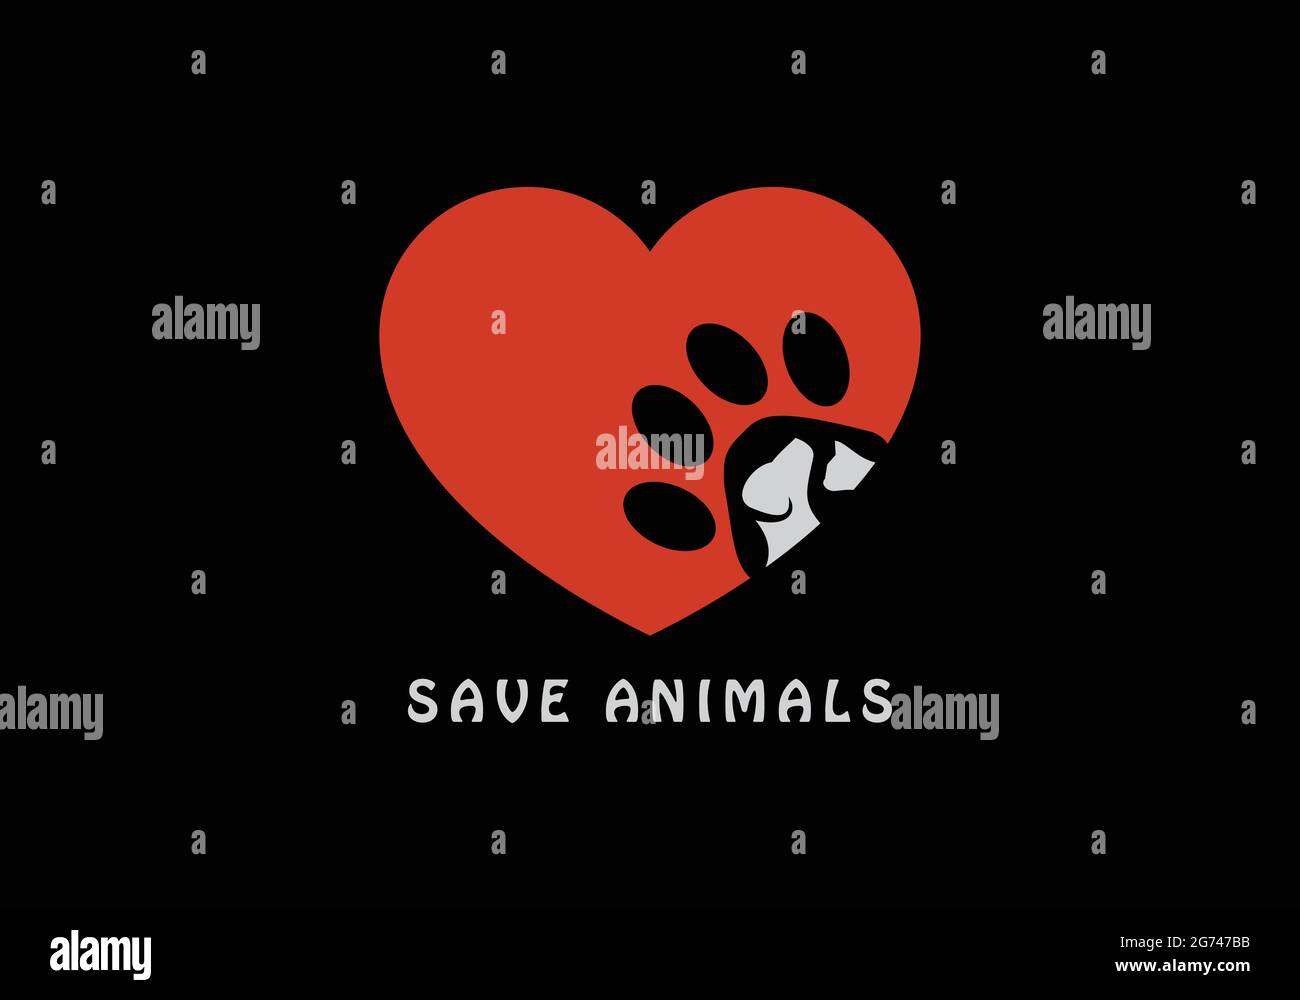 Speichern Tiere Logo für Tiergesundheit / Gesellschaft / Hund und Katze Logo in Liebe oder Herzform Hund und Katze Gesicht Logo Tierrettung NGO Logo Stock Vektor